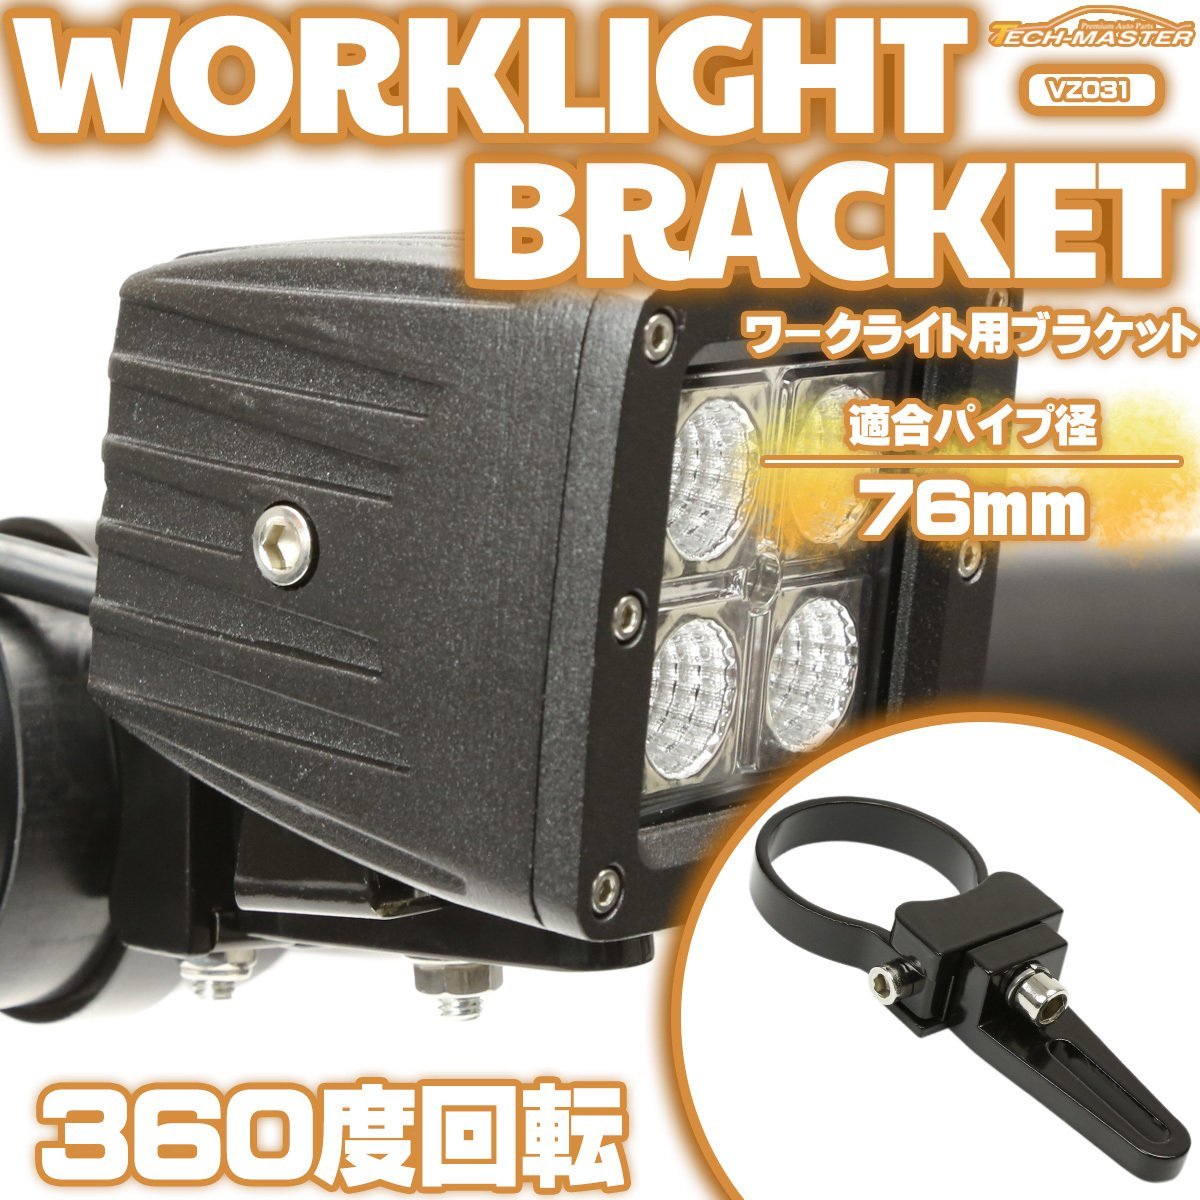 アルミ製 ブラケット パイプステー 360度回転 適合パイプ径 76mm 作業灯 ワークライト ライトバー 集魚灯 などの取り付けに VZ031_画像1